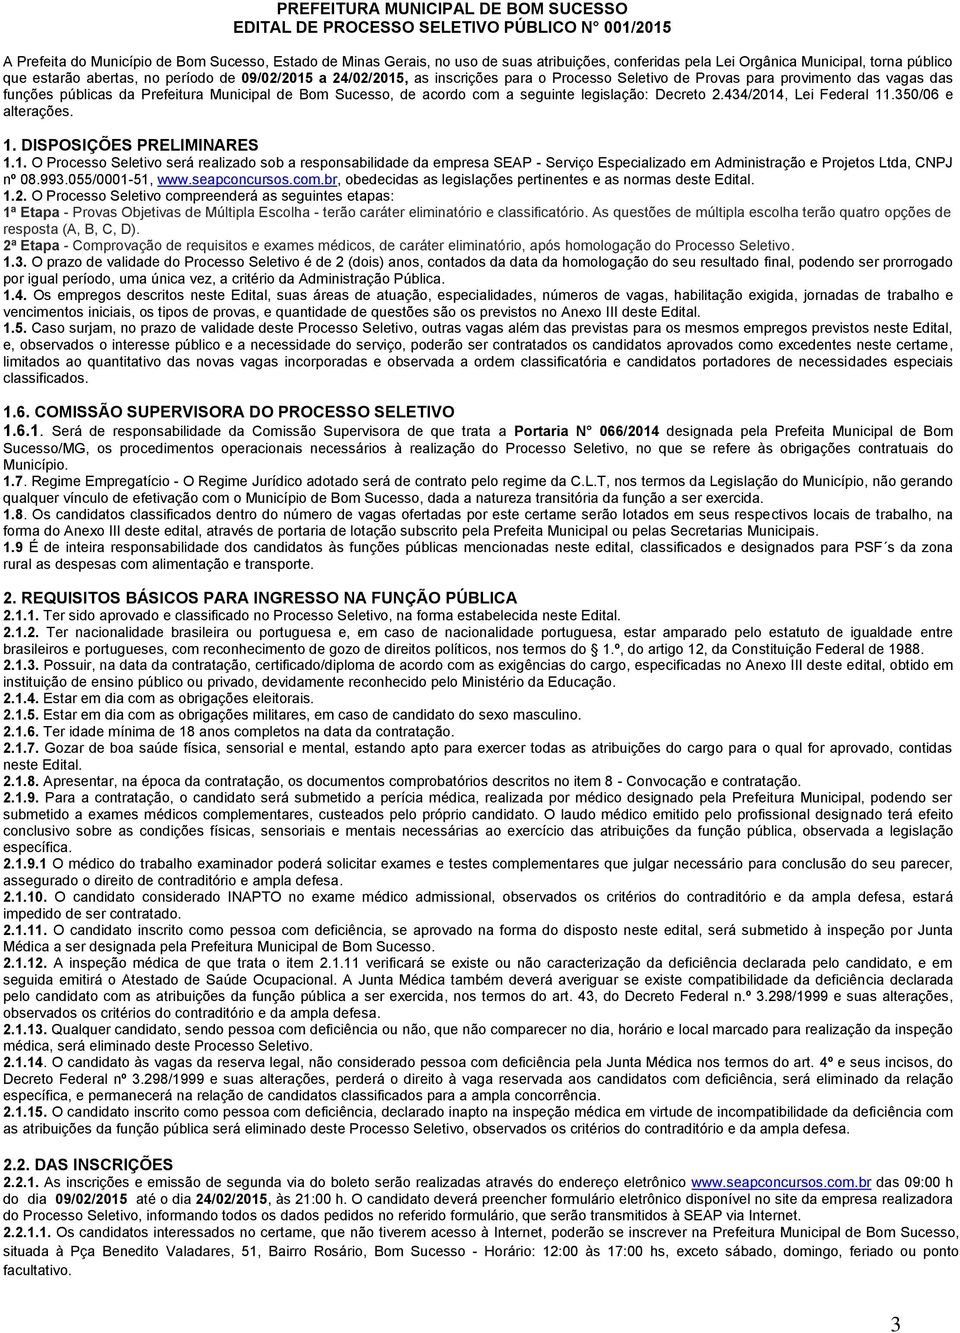 Prefeitura Municipal de Bom Sucesso, de acordo com a seguinte legislação: Decreto 2.434/2014